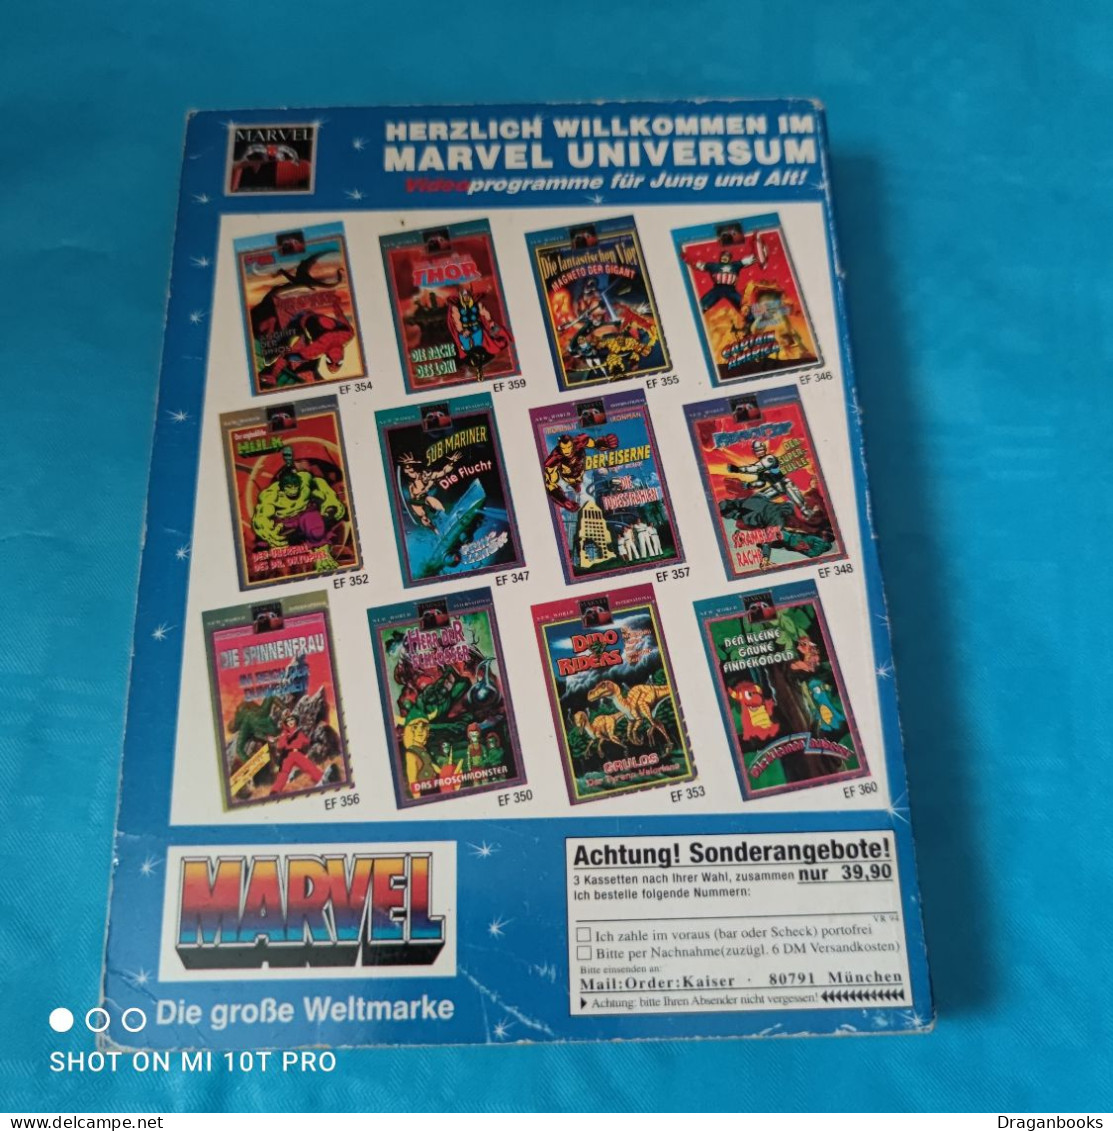 Marvel Maxi Pockets Nr. 39 - Der Unglaubliche Hulk - Otros & Sin Clasificación